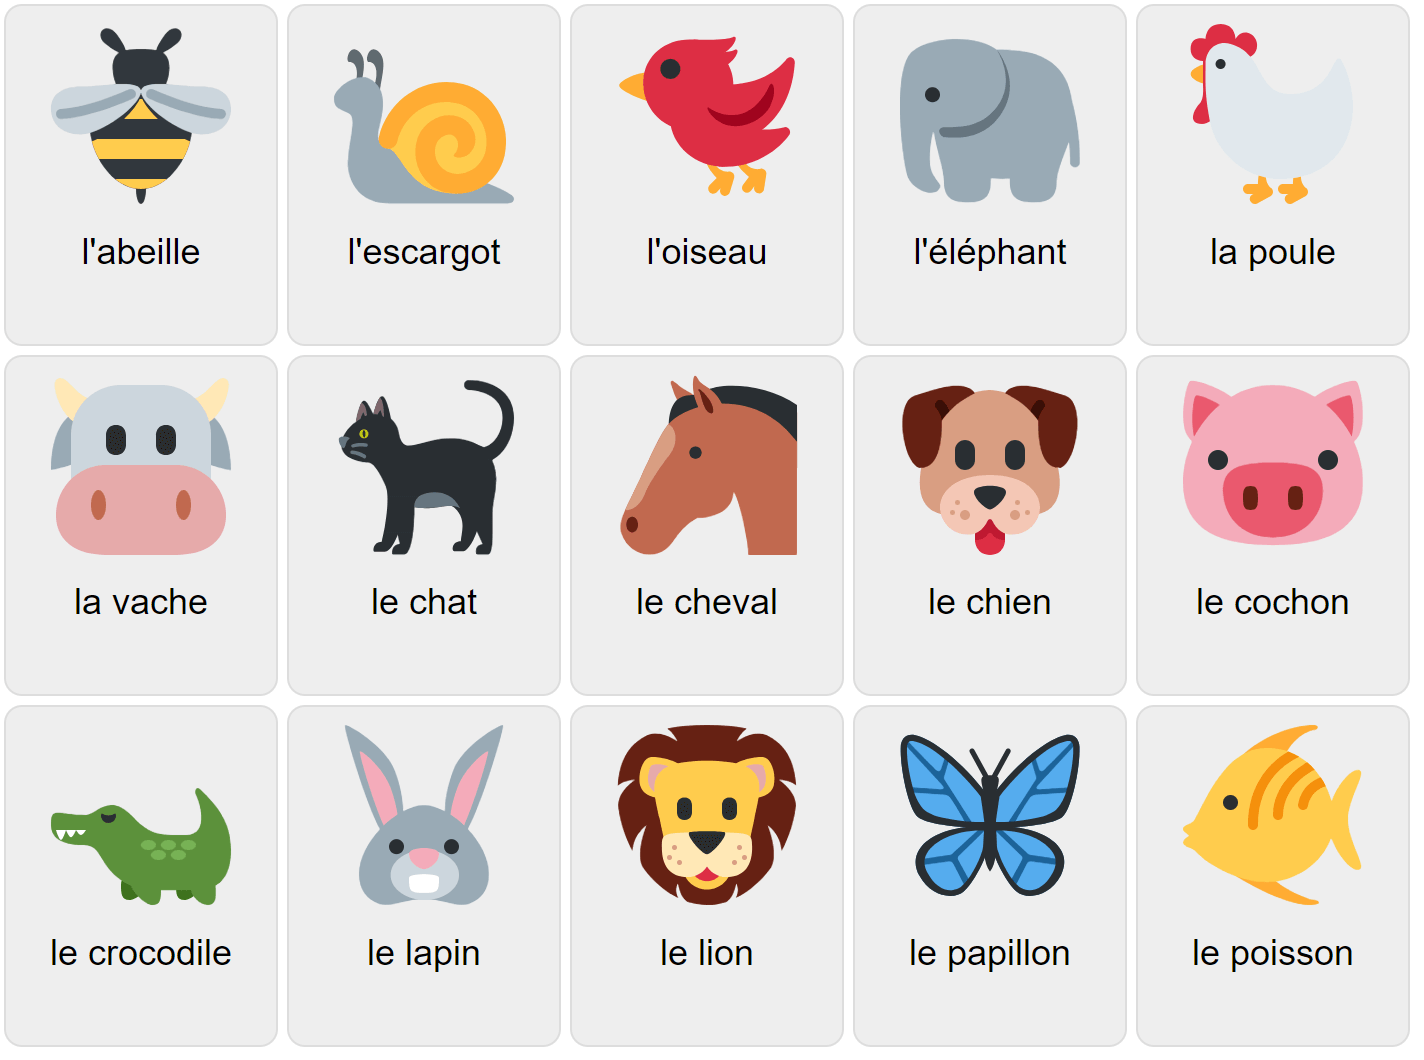 Djur på franska 1